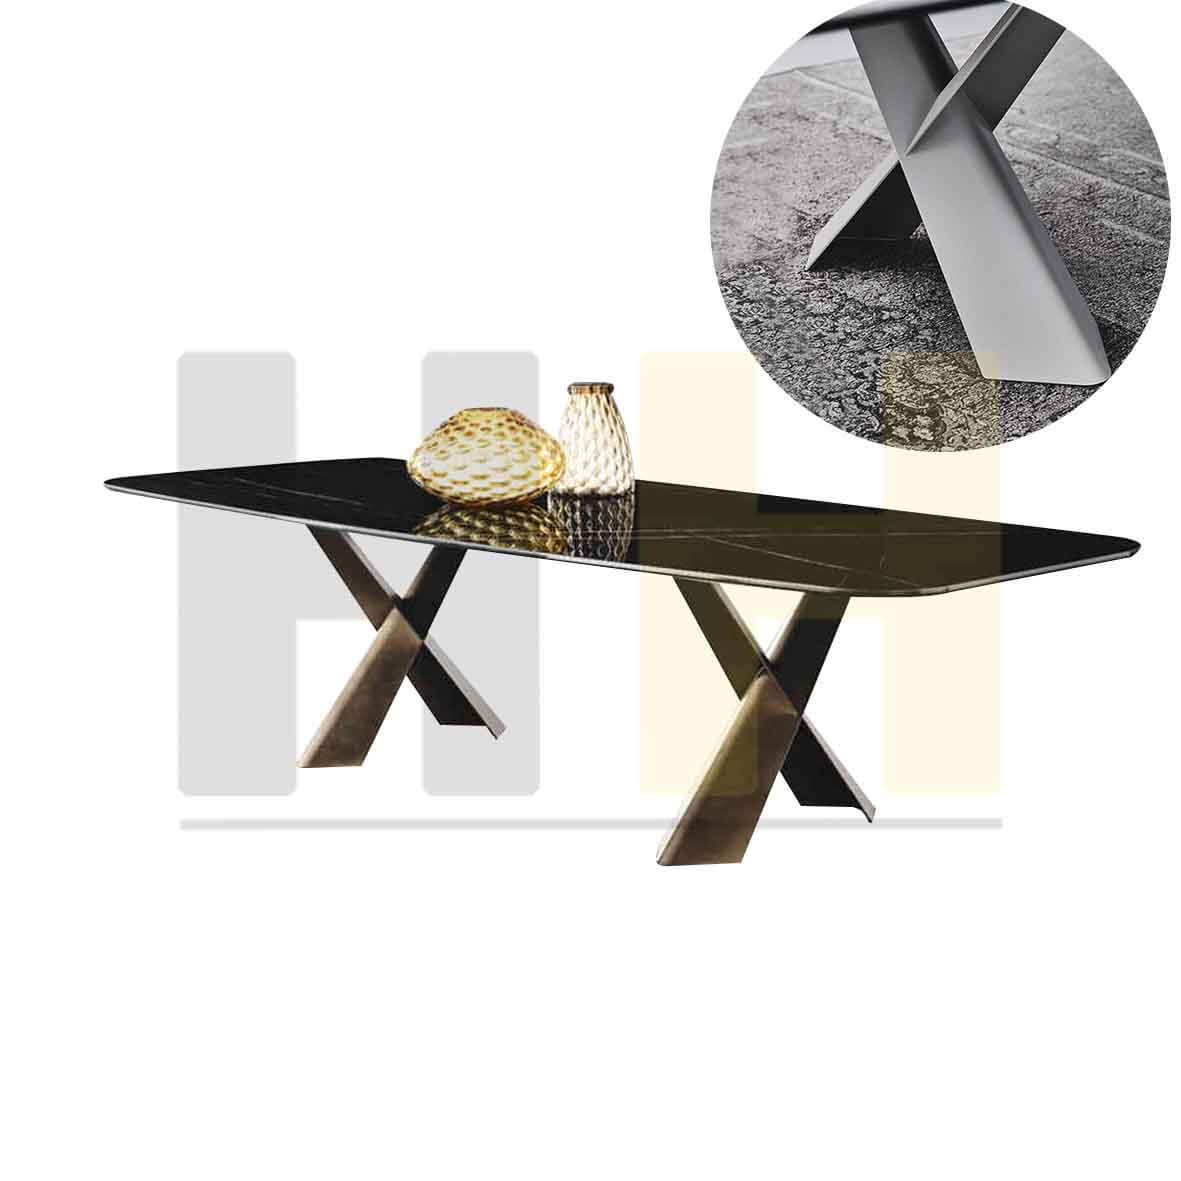 好窩家具的義大利陶板餐桌、西班牙陶板餐桌和磁磚的差別